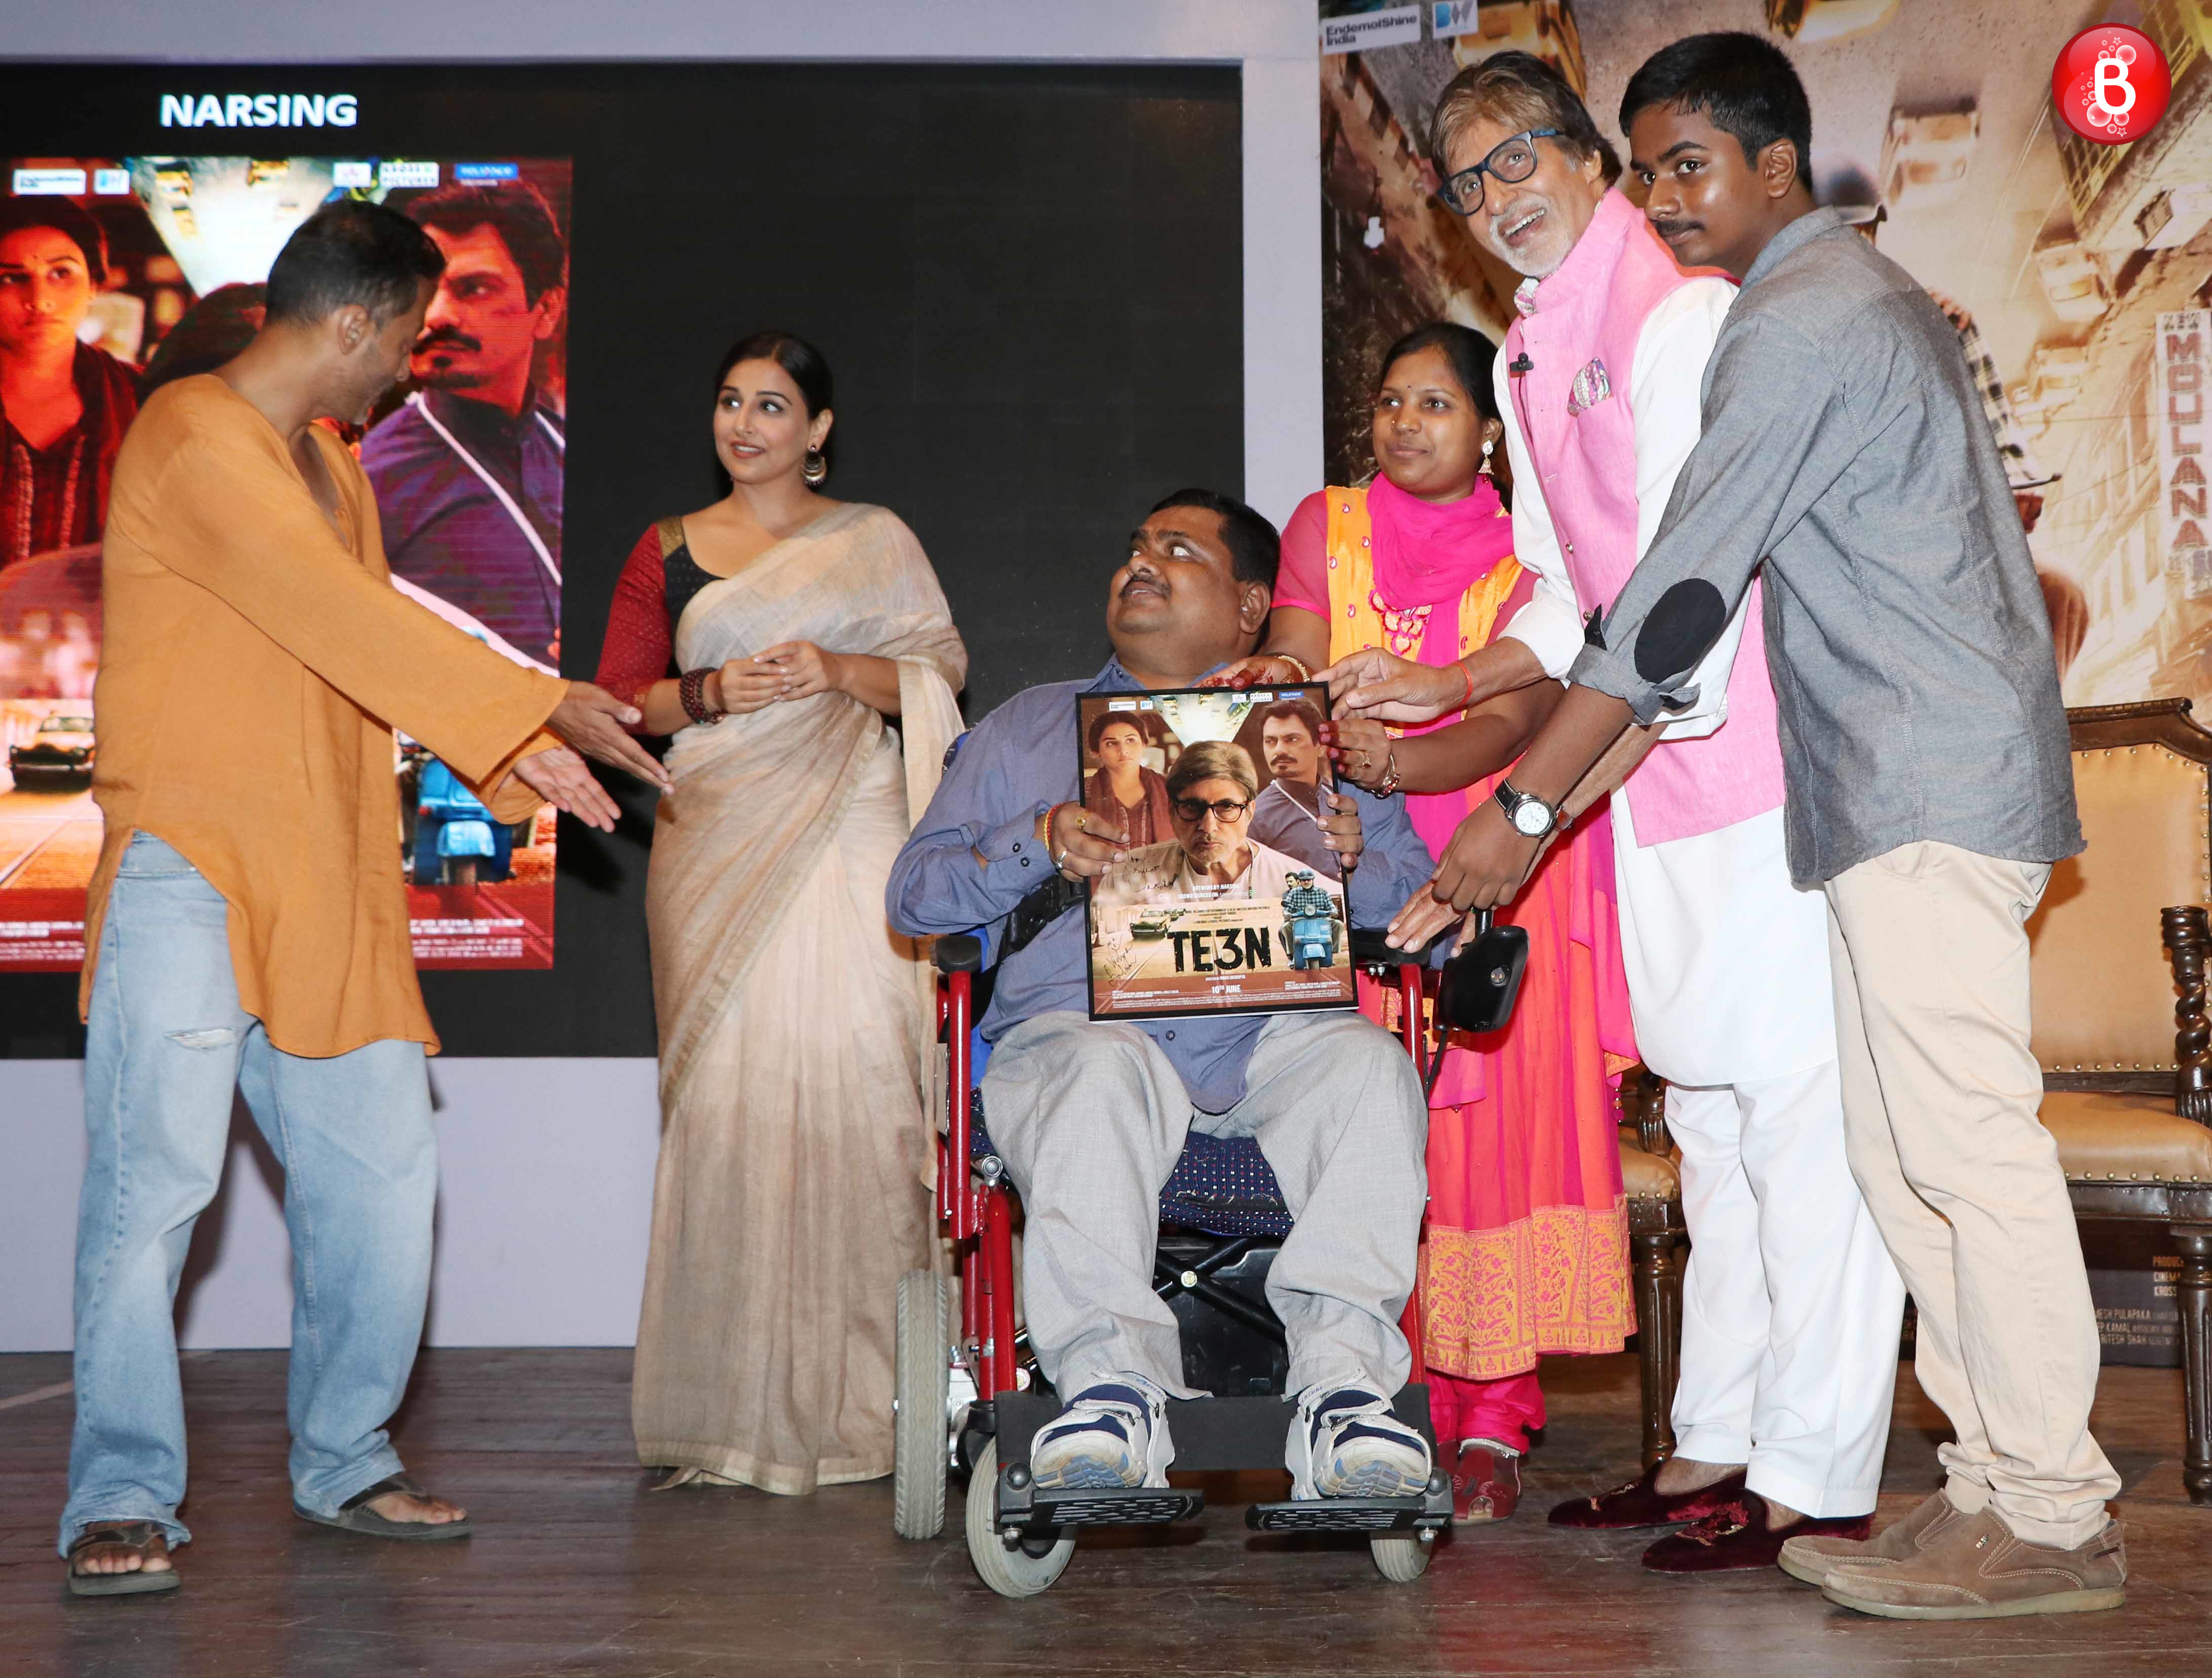 Sujoy Ghosh,Vidya Balan, Amitabh Bachchan with a fan